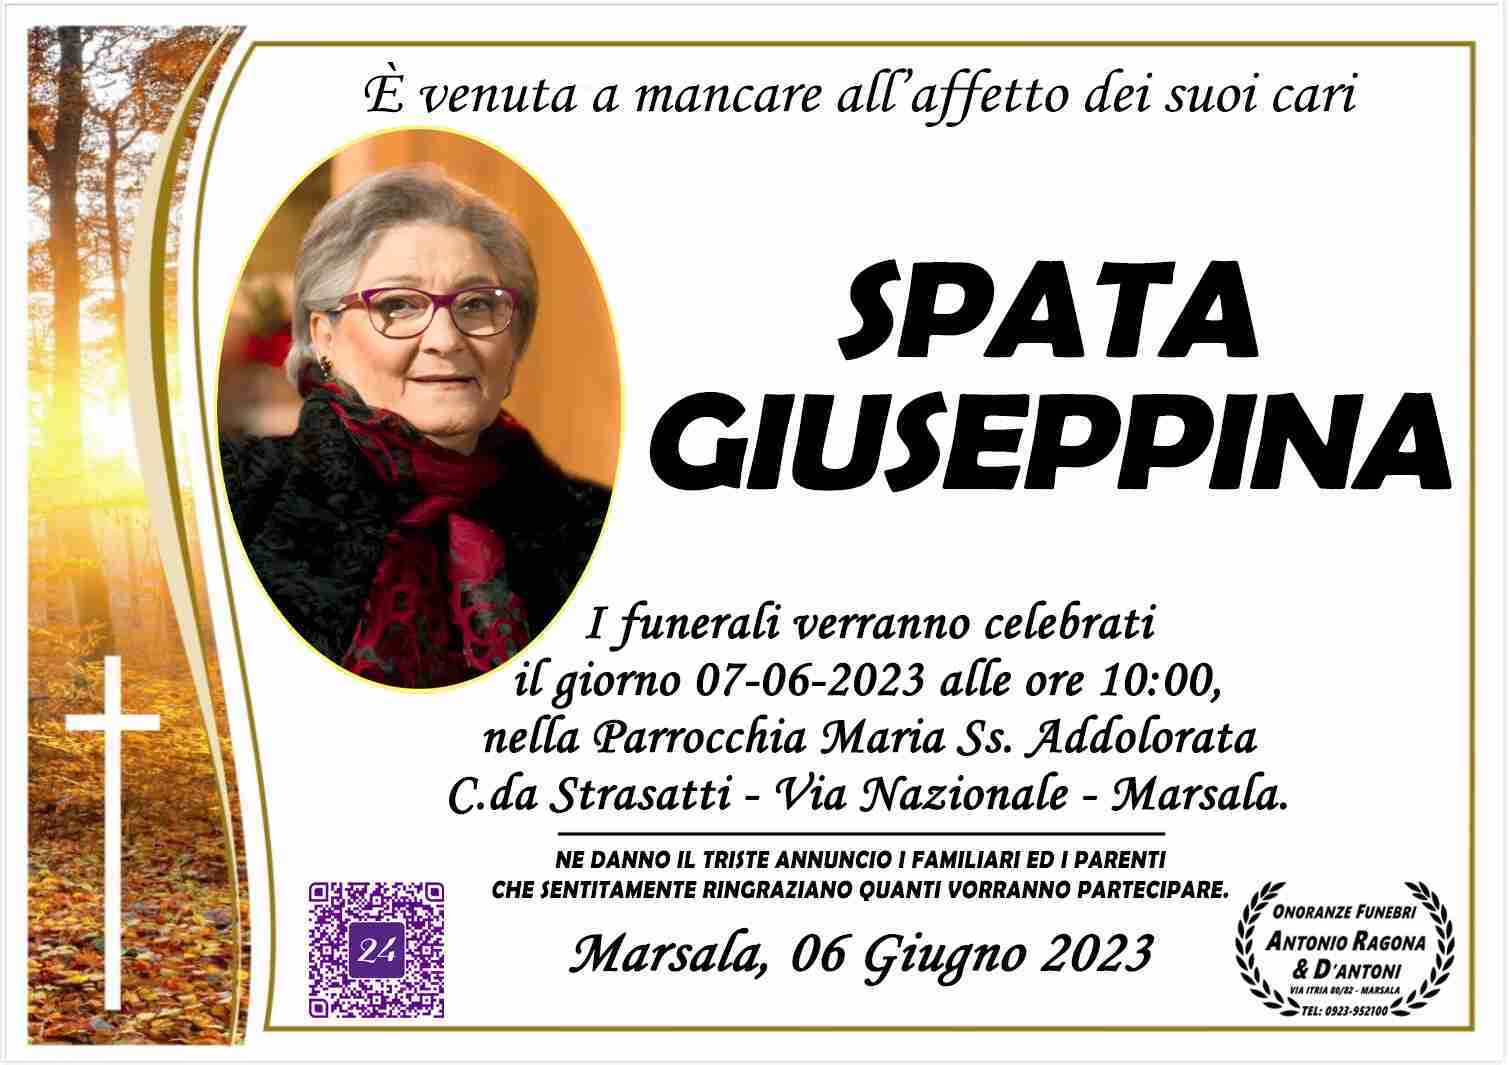 Giuseppina Spata